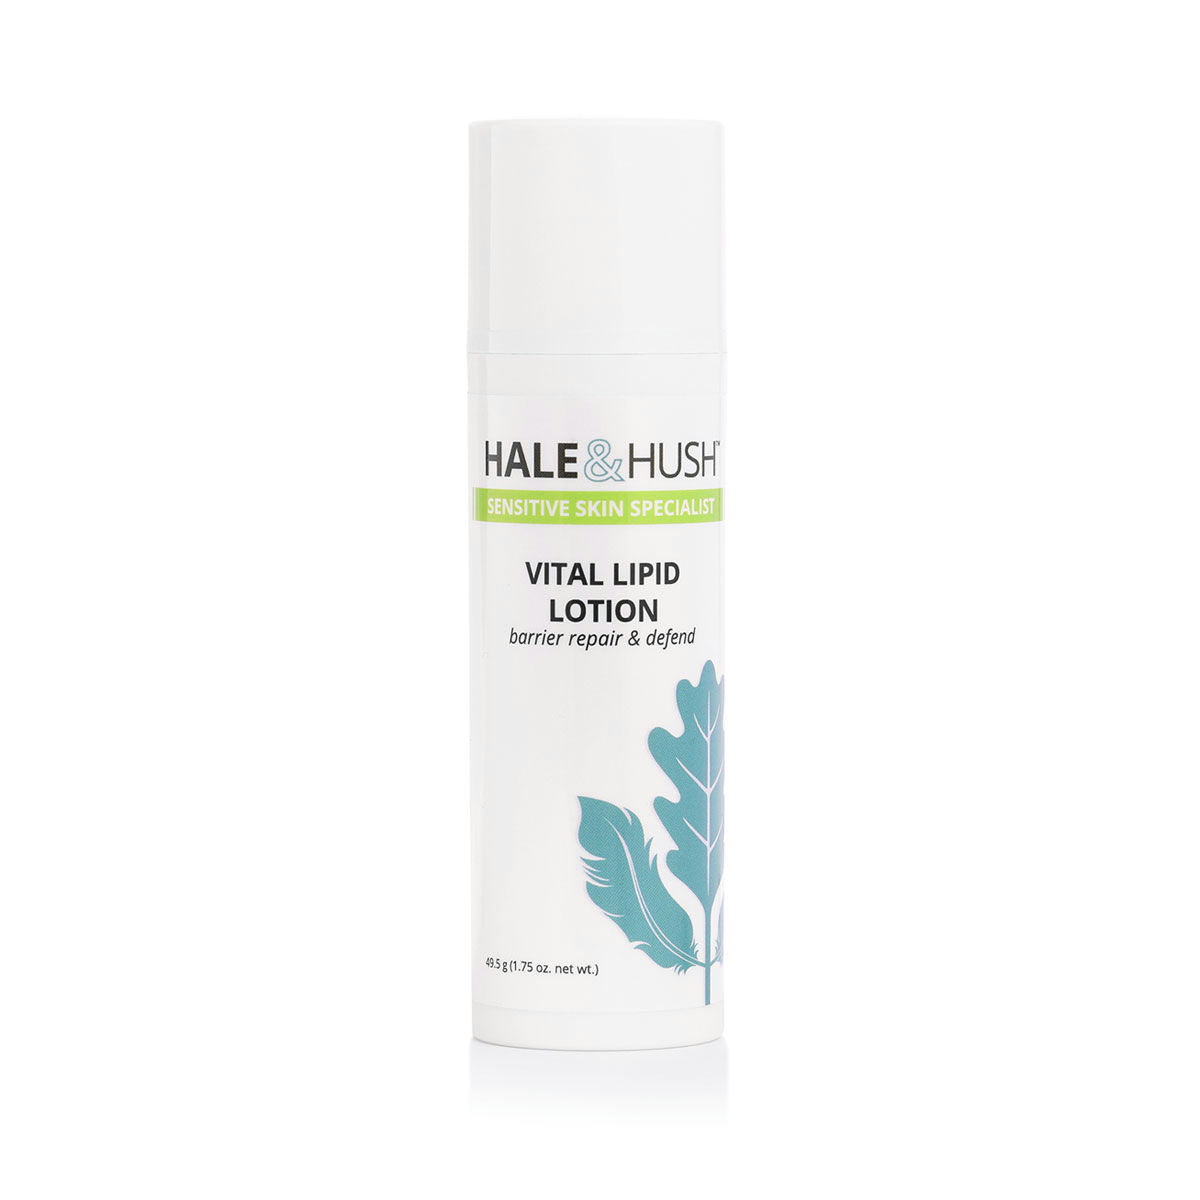 Hale & Hush: Vital Lipid Lotion